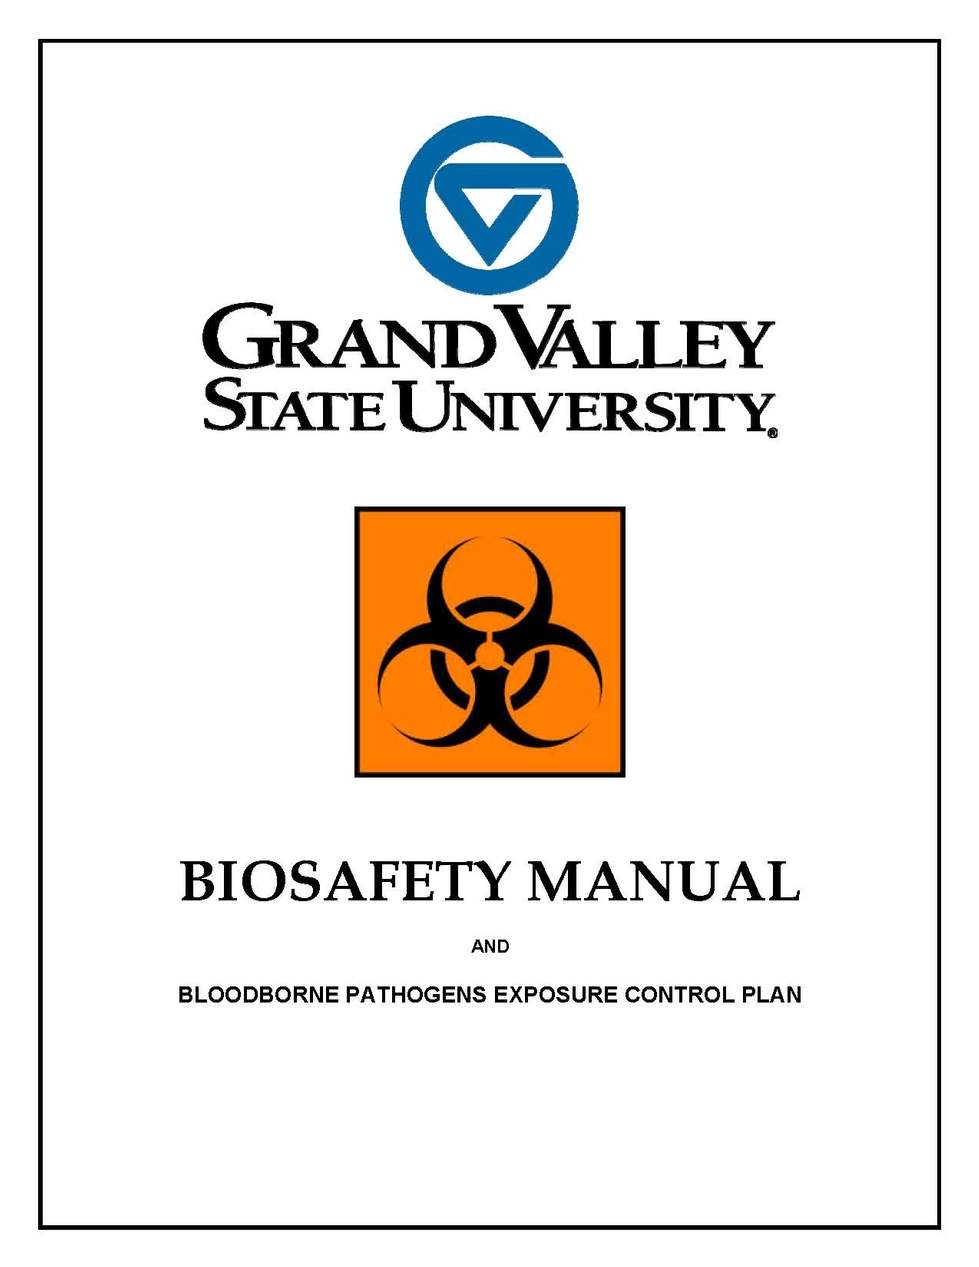 Biosafety Manual pdf